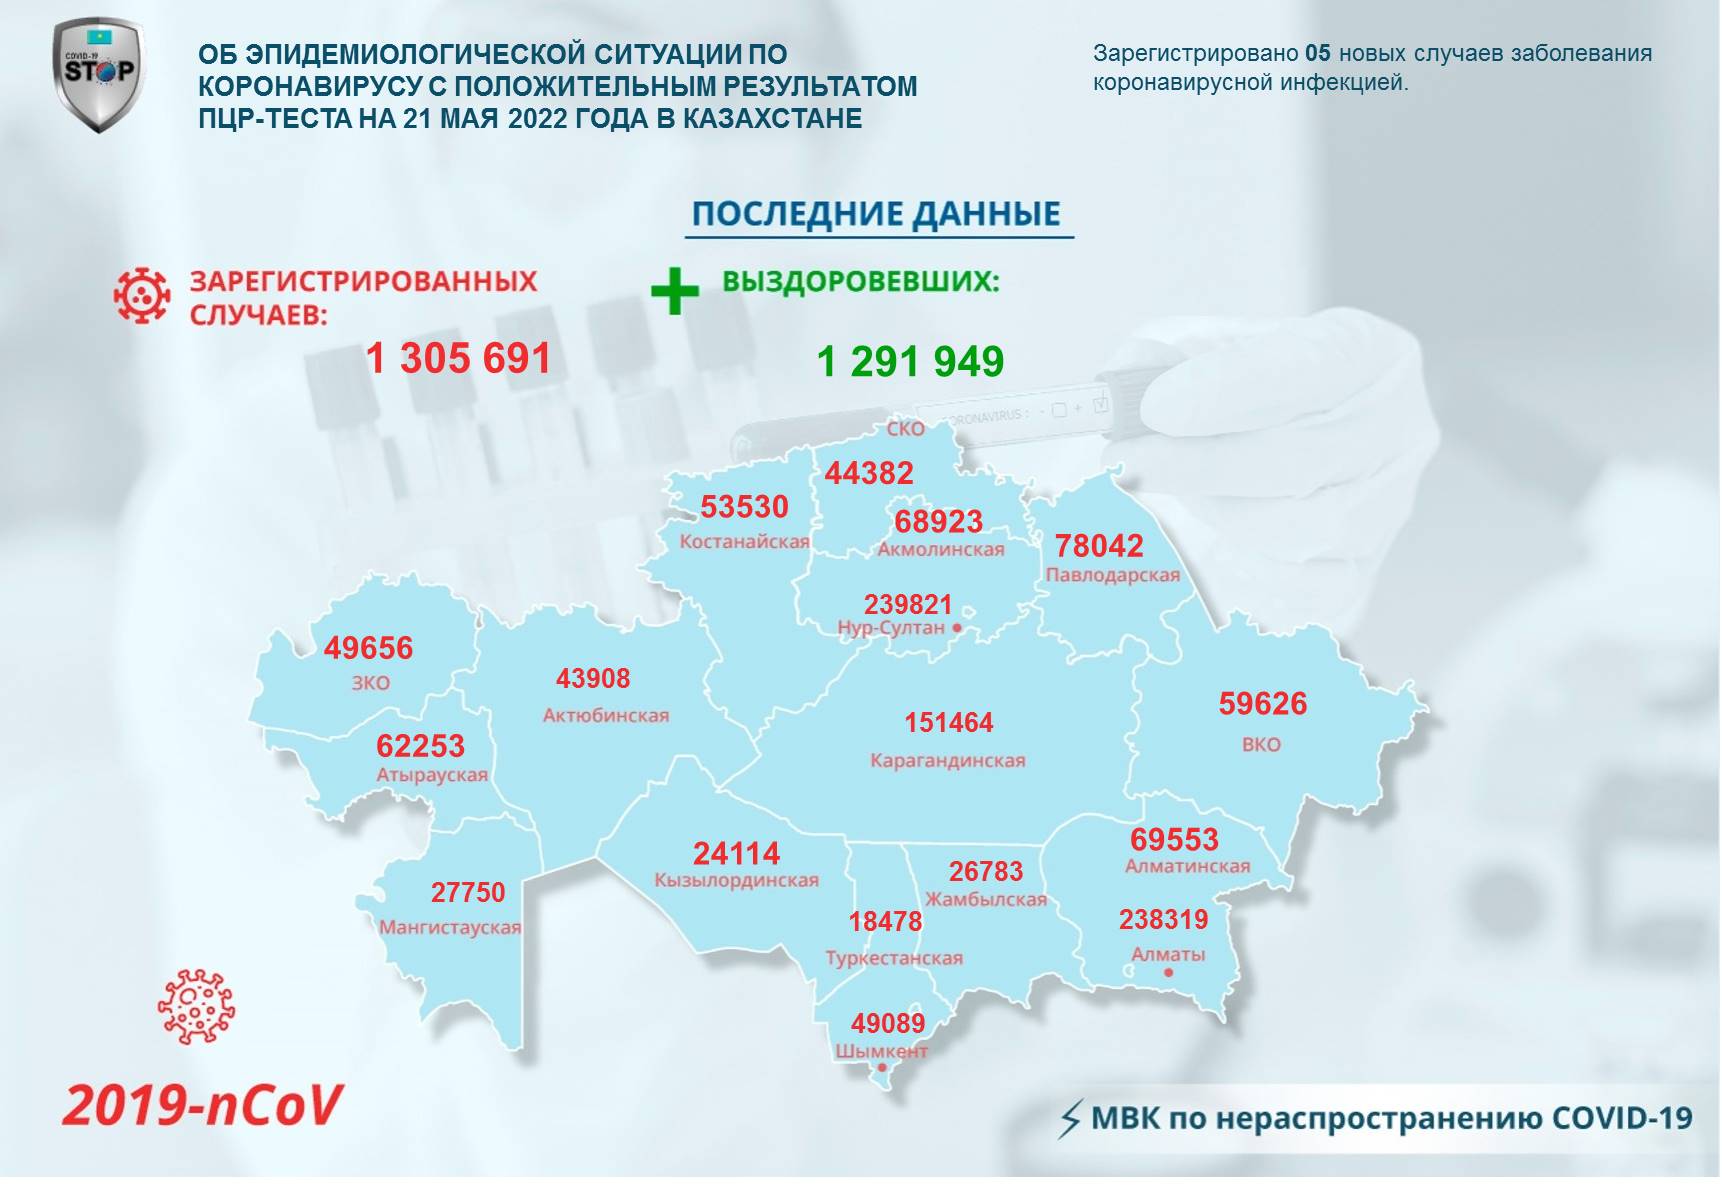 Об эпидемиологической ситуации по коронавирусу с положительным результатом ПЦР-теста на 21 мая 2022 года в Казахстане